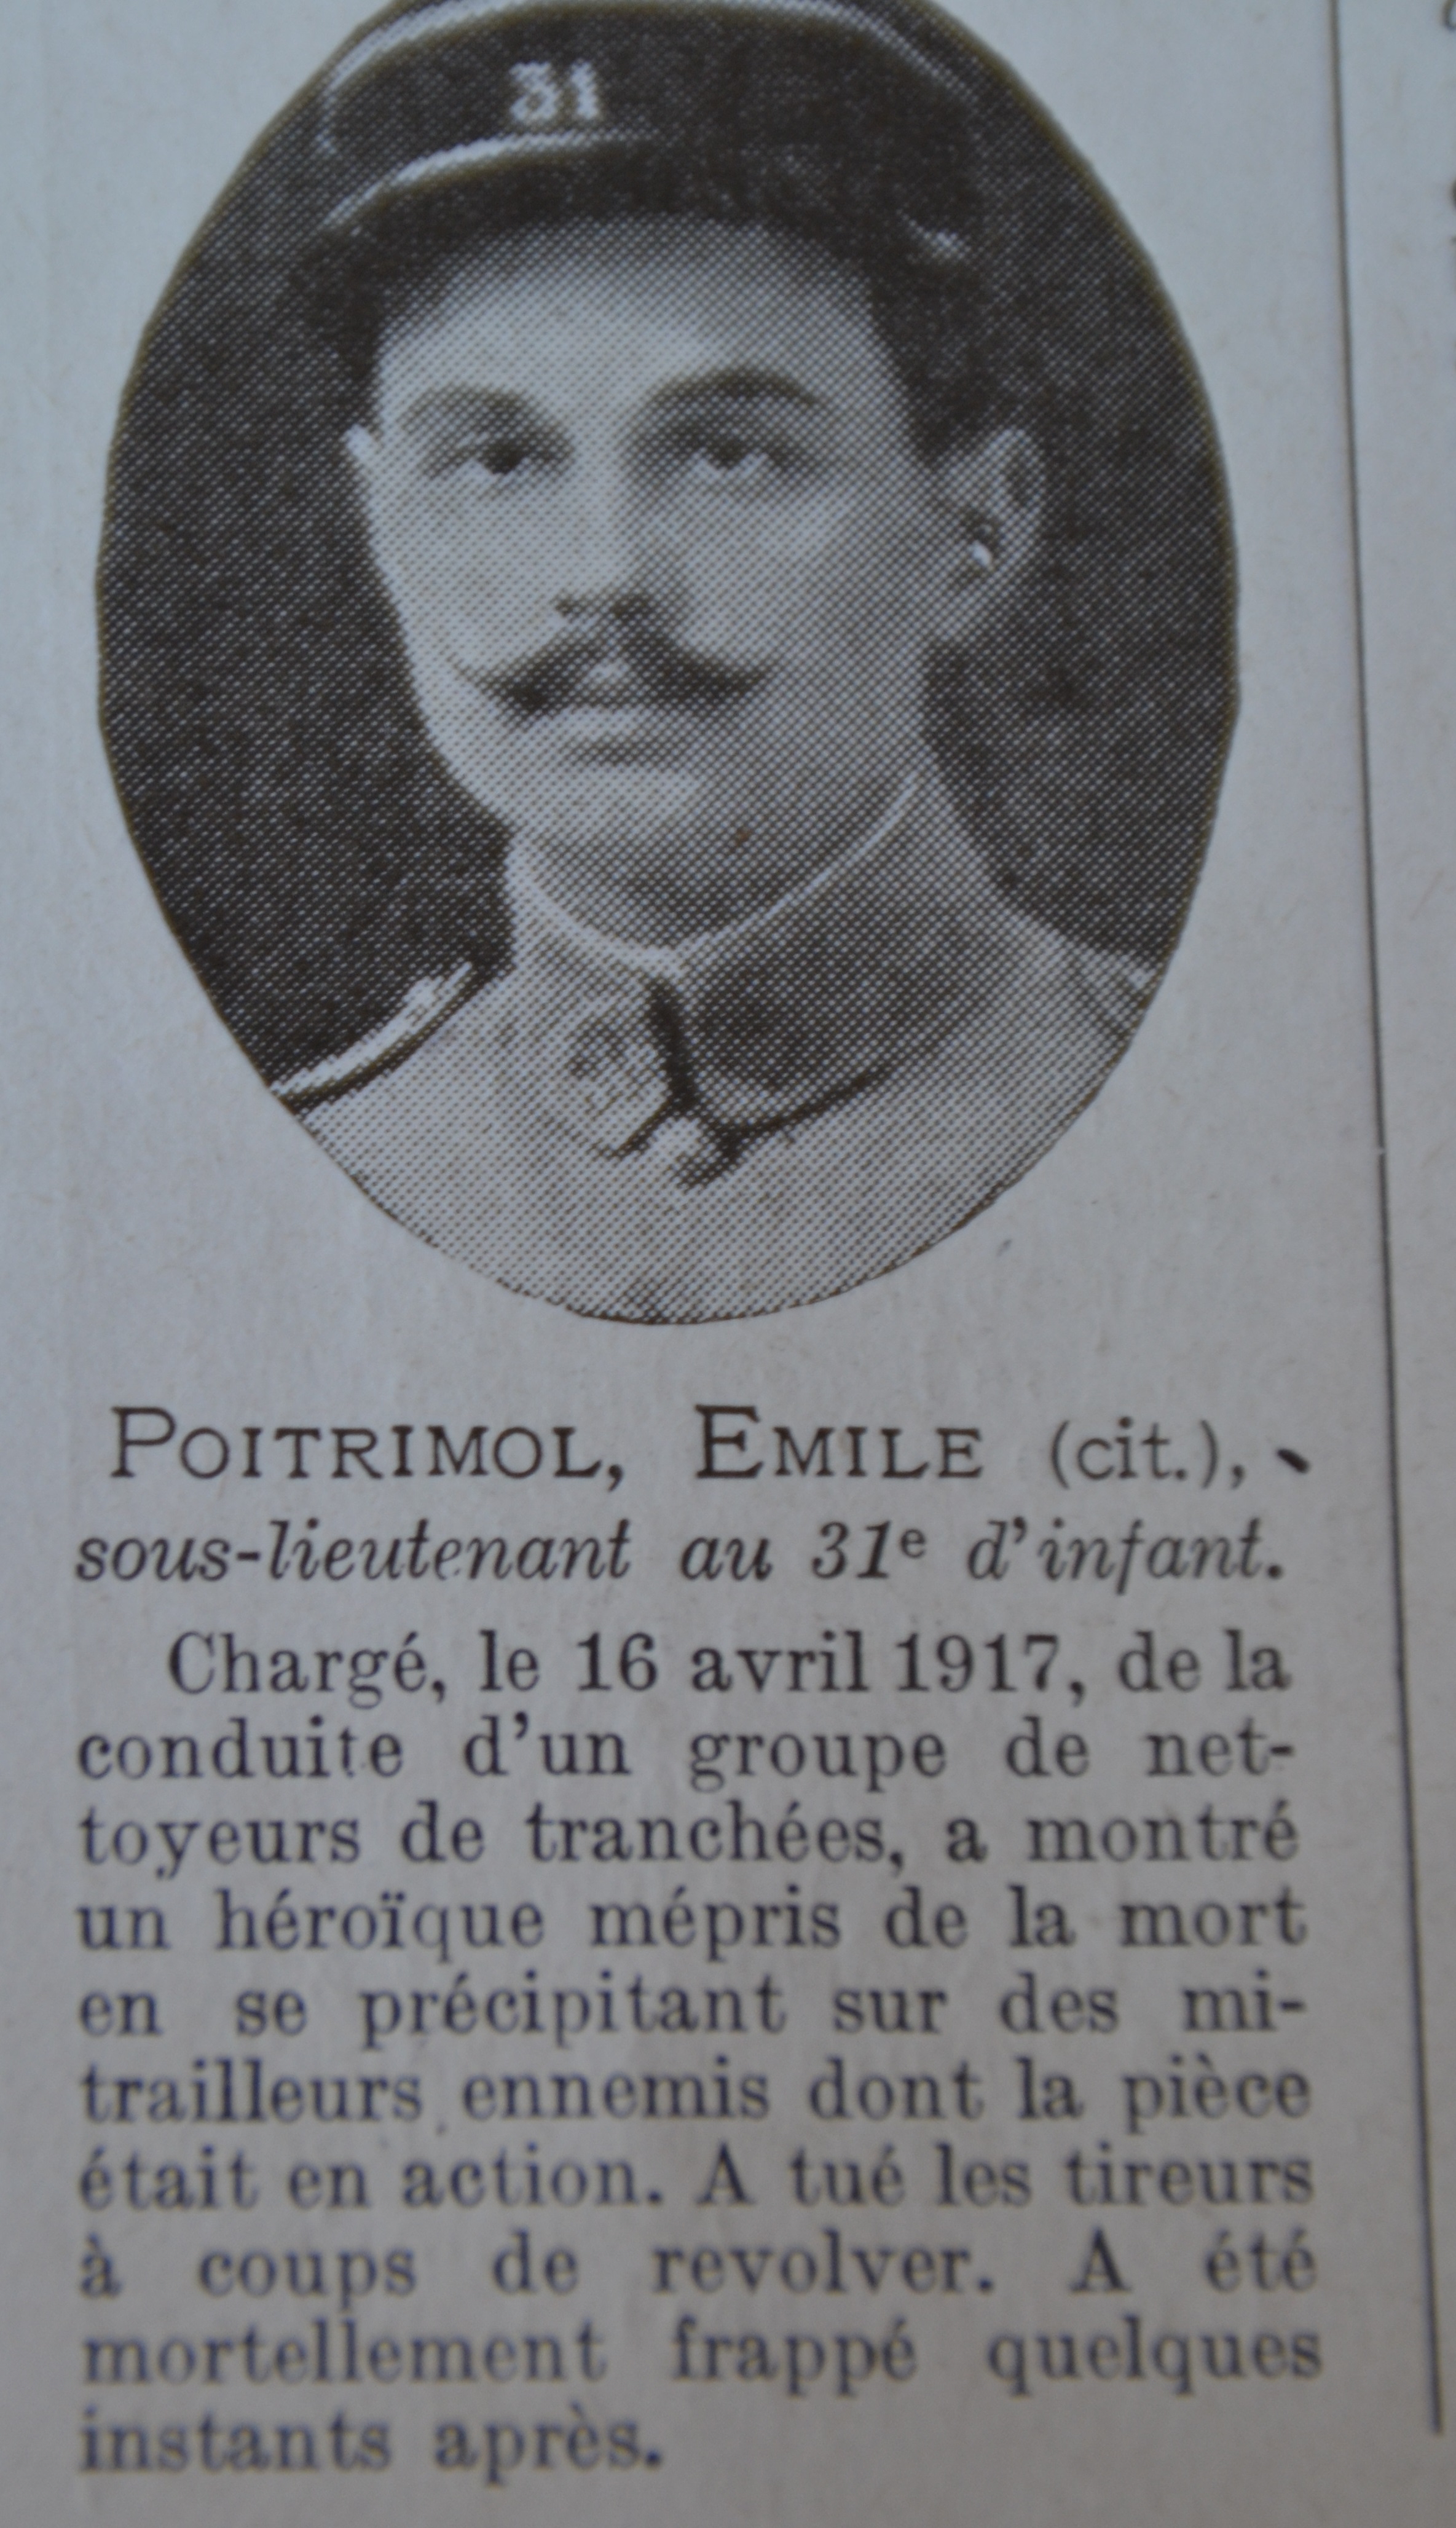 Poitrimol Emile portrait